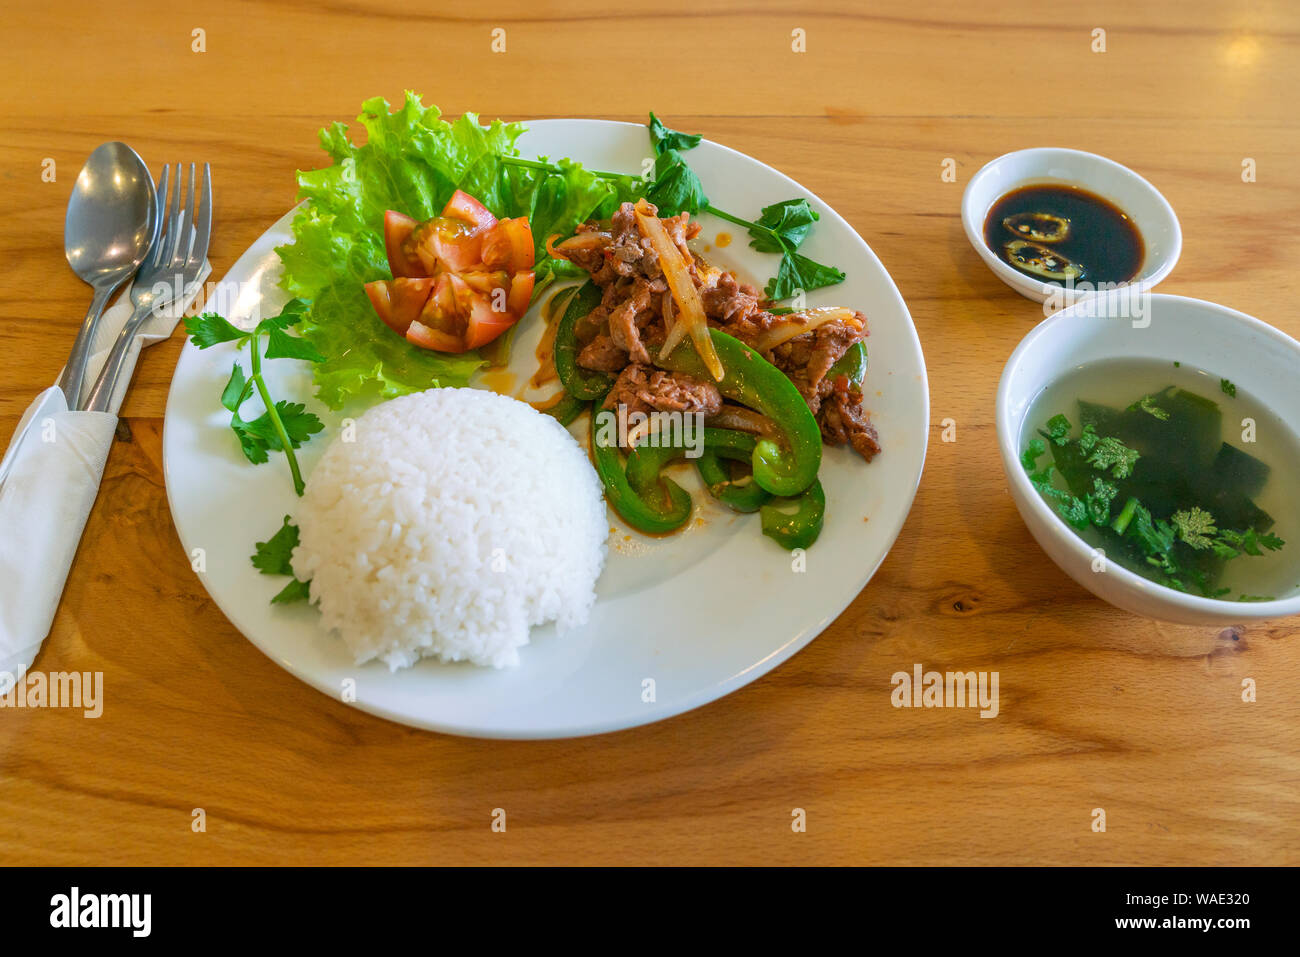 Repas asiatique typique avec sauté de boeuf et riz blanc Banque D'Images